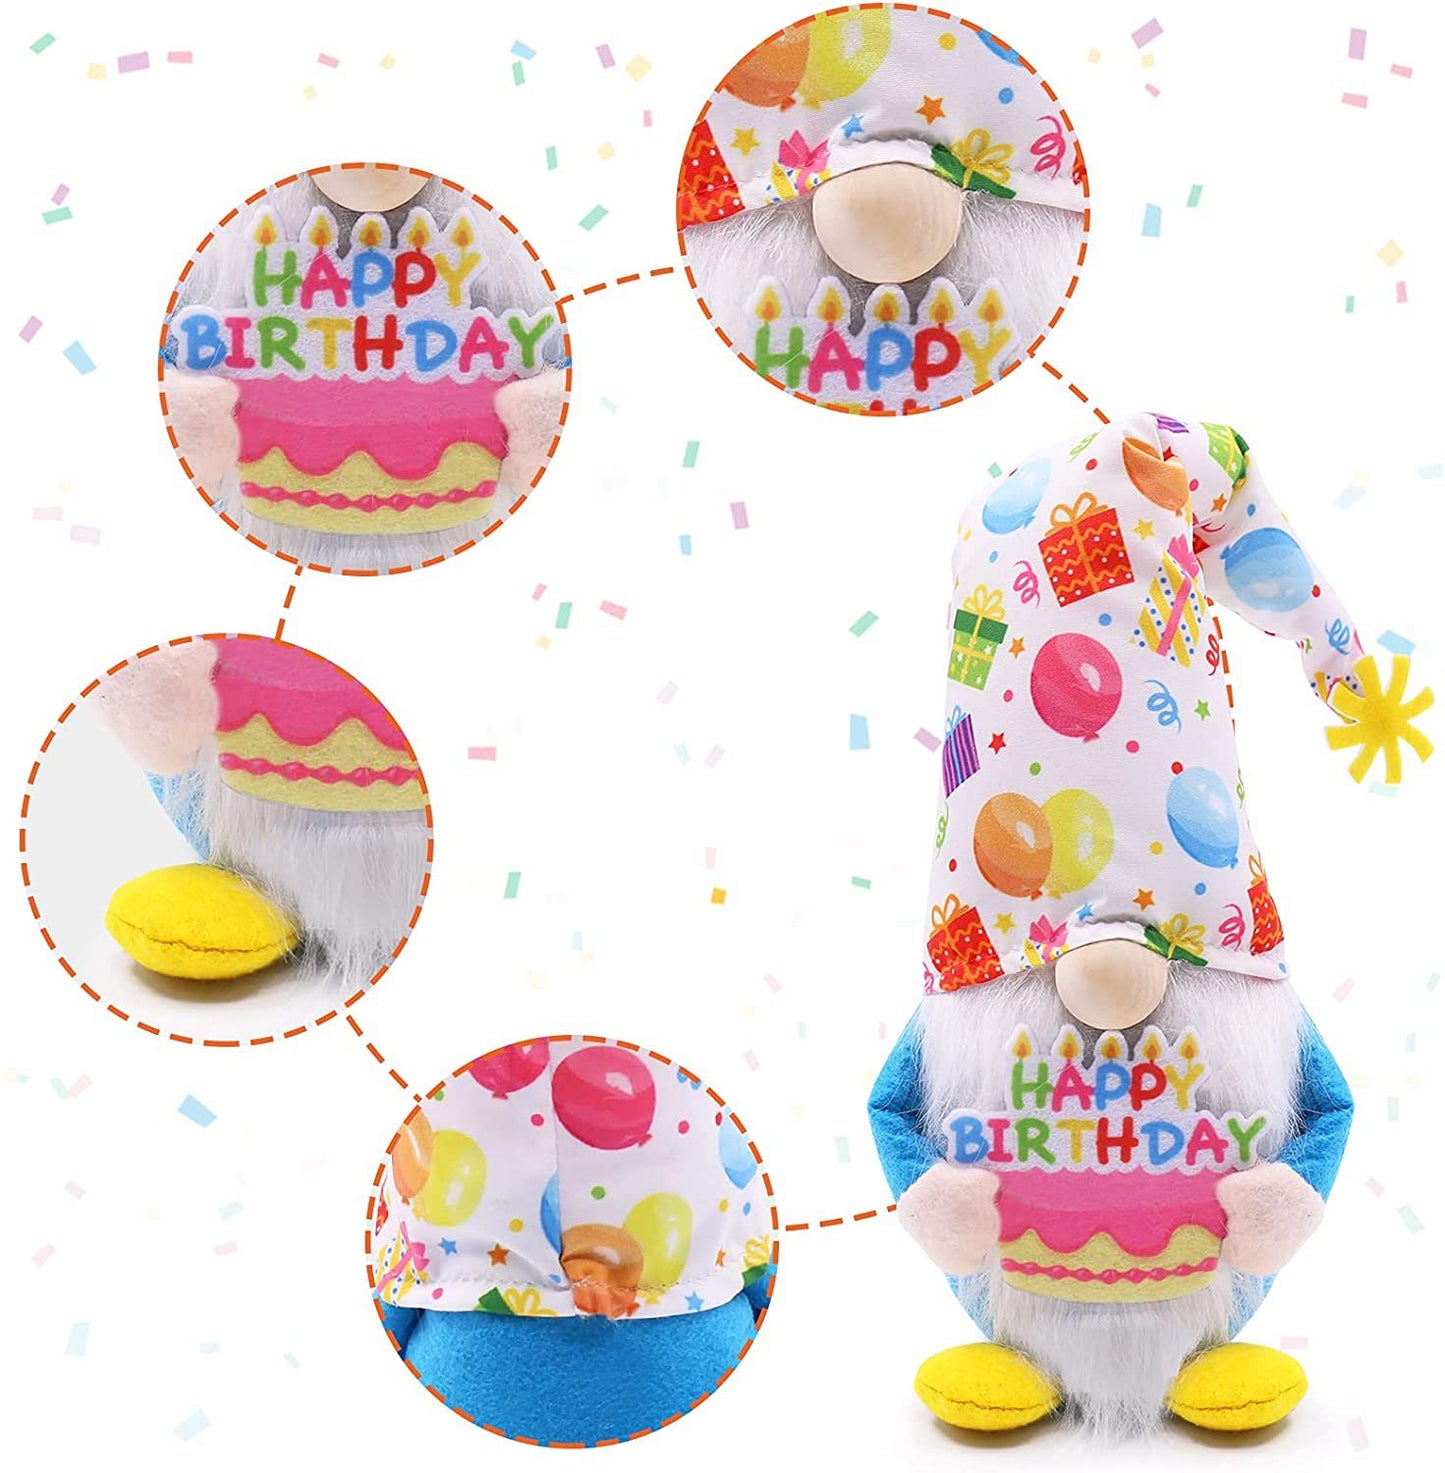 Happy Birthday Gnome